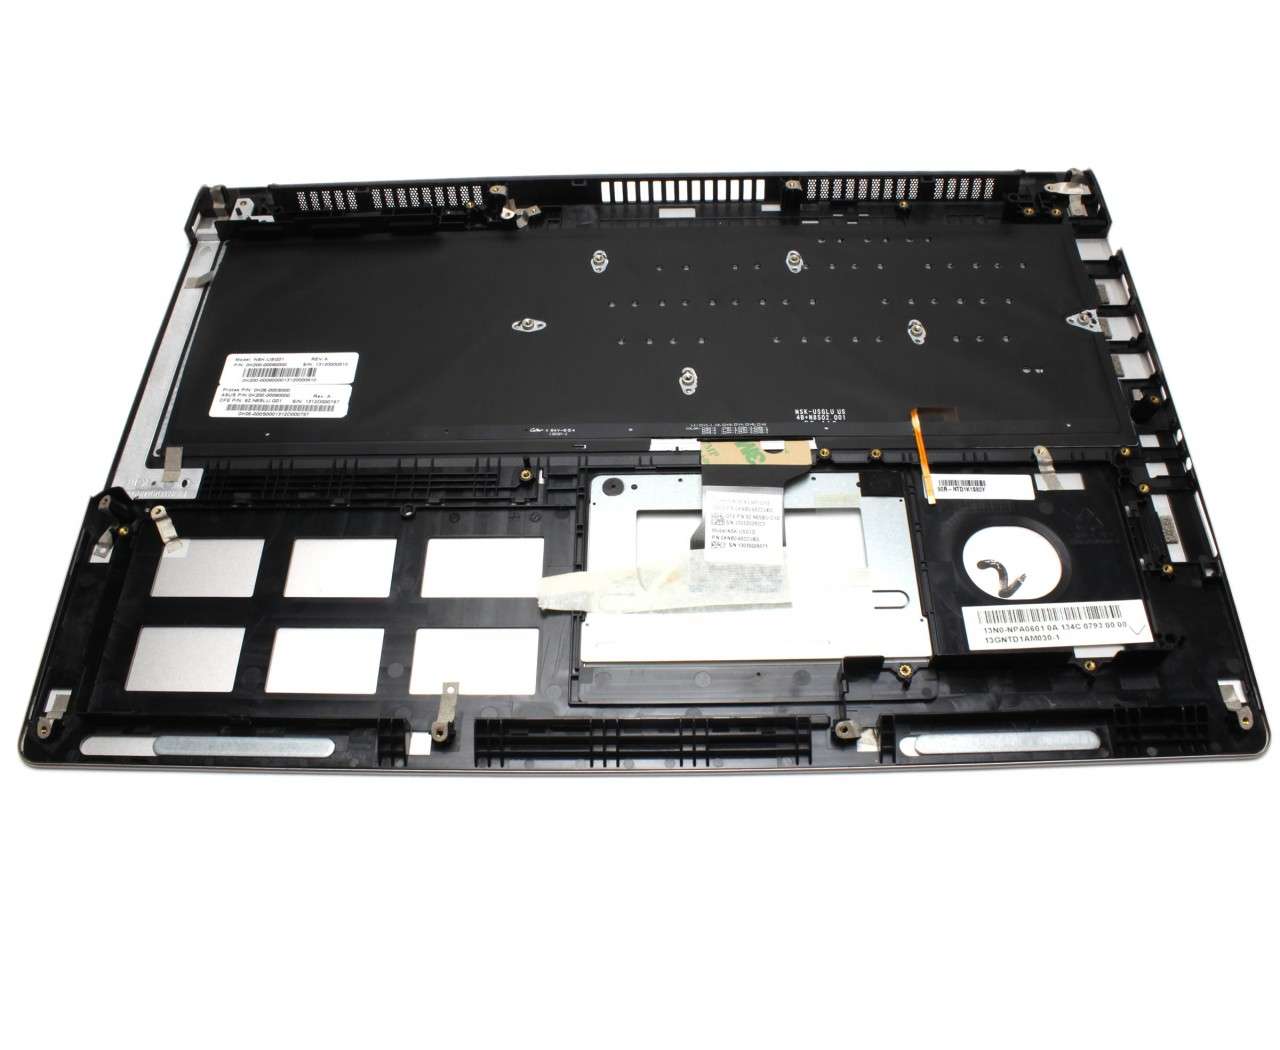 Tastatura Asus UX52VS neagra cu Palmrest argintiu iluminata backlit